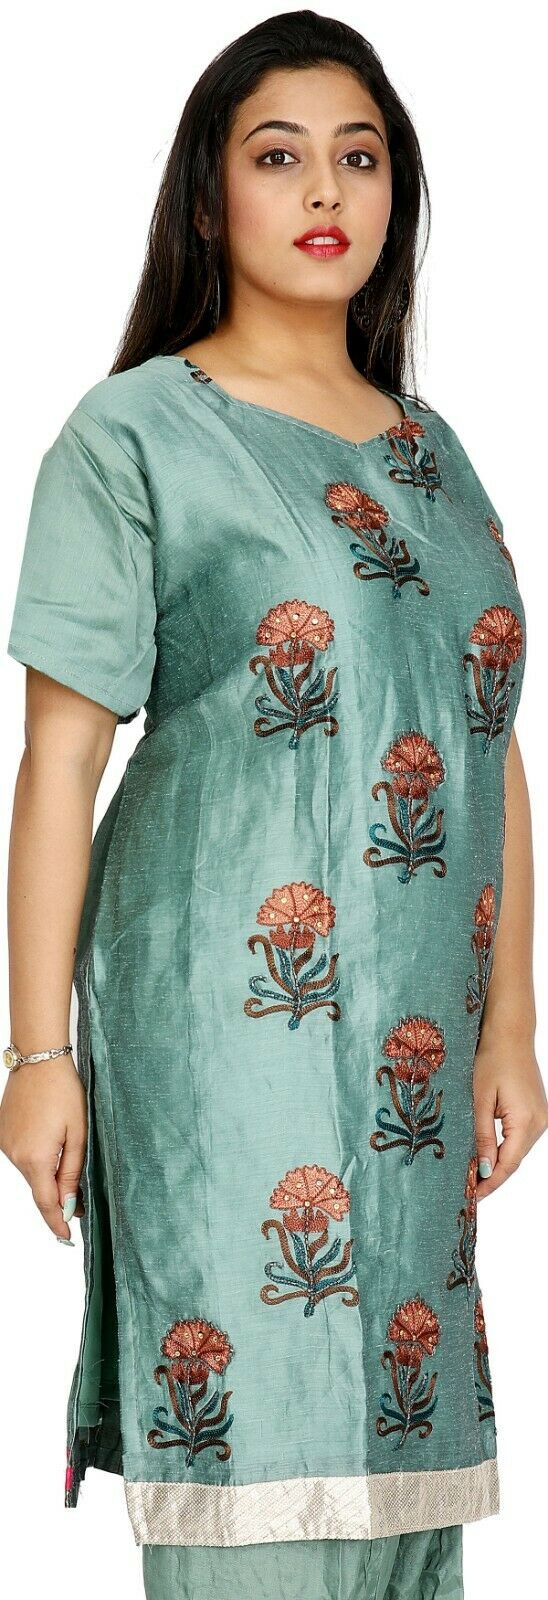 Green Cotton Silk Designer Ethnic Short  Sleeves  Salwar kameez chest size 56